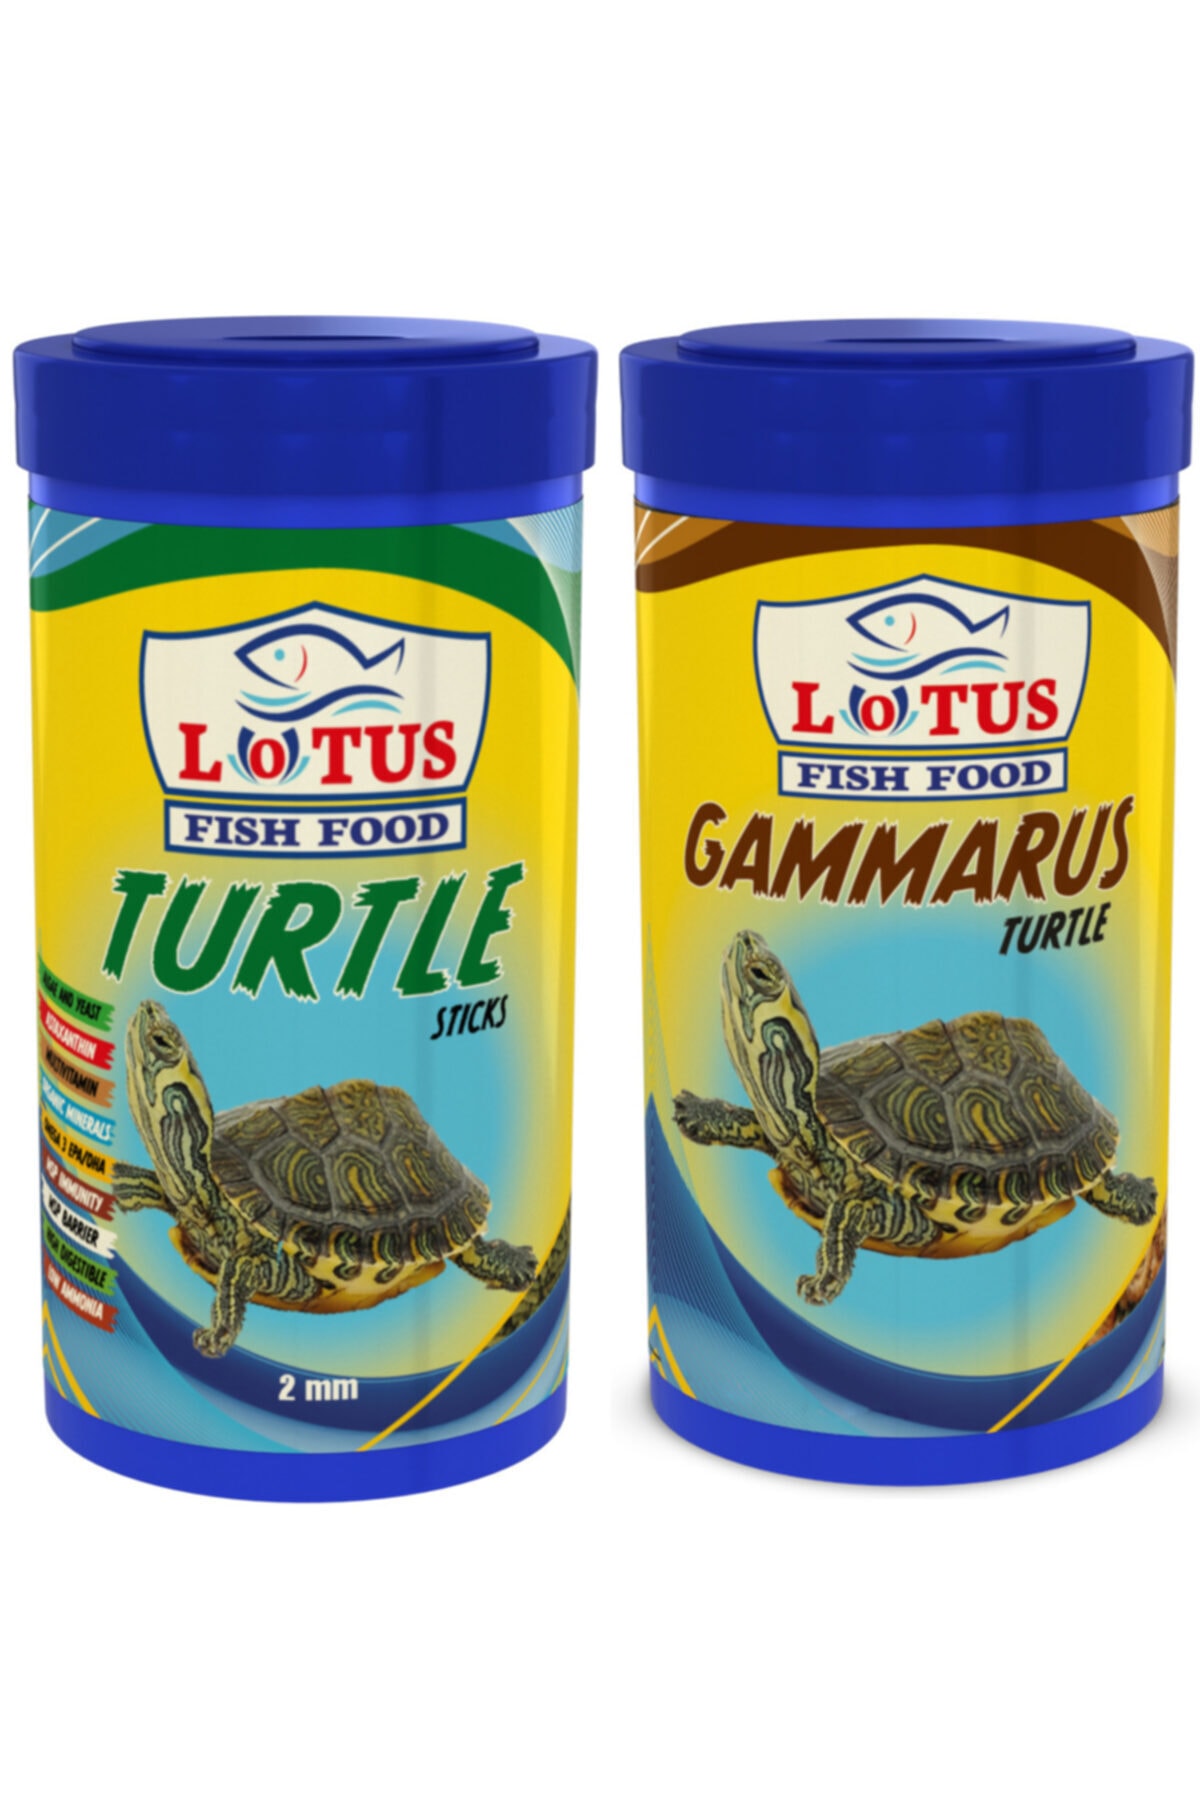 Lotus Turtle Sticks 1000ml Ve Gammarus 1000ml Kutu Sürüngen Ve Kaplumbağa Yemi